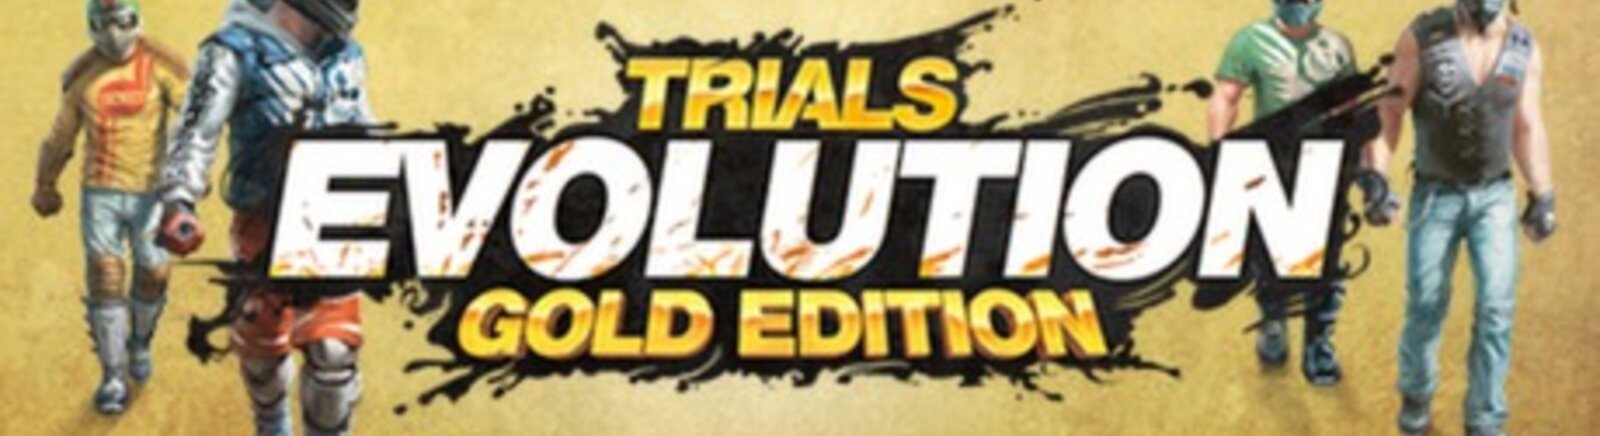 Trials Evolution: Gold Edition - Что Это За Игра, Трейлер.